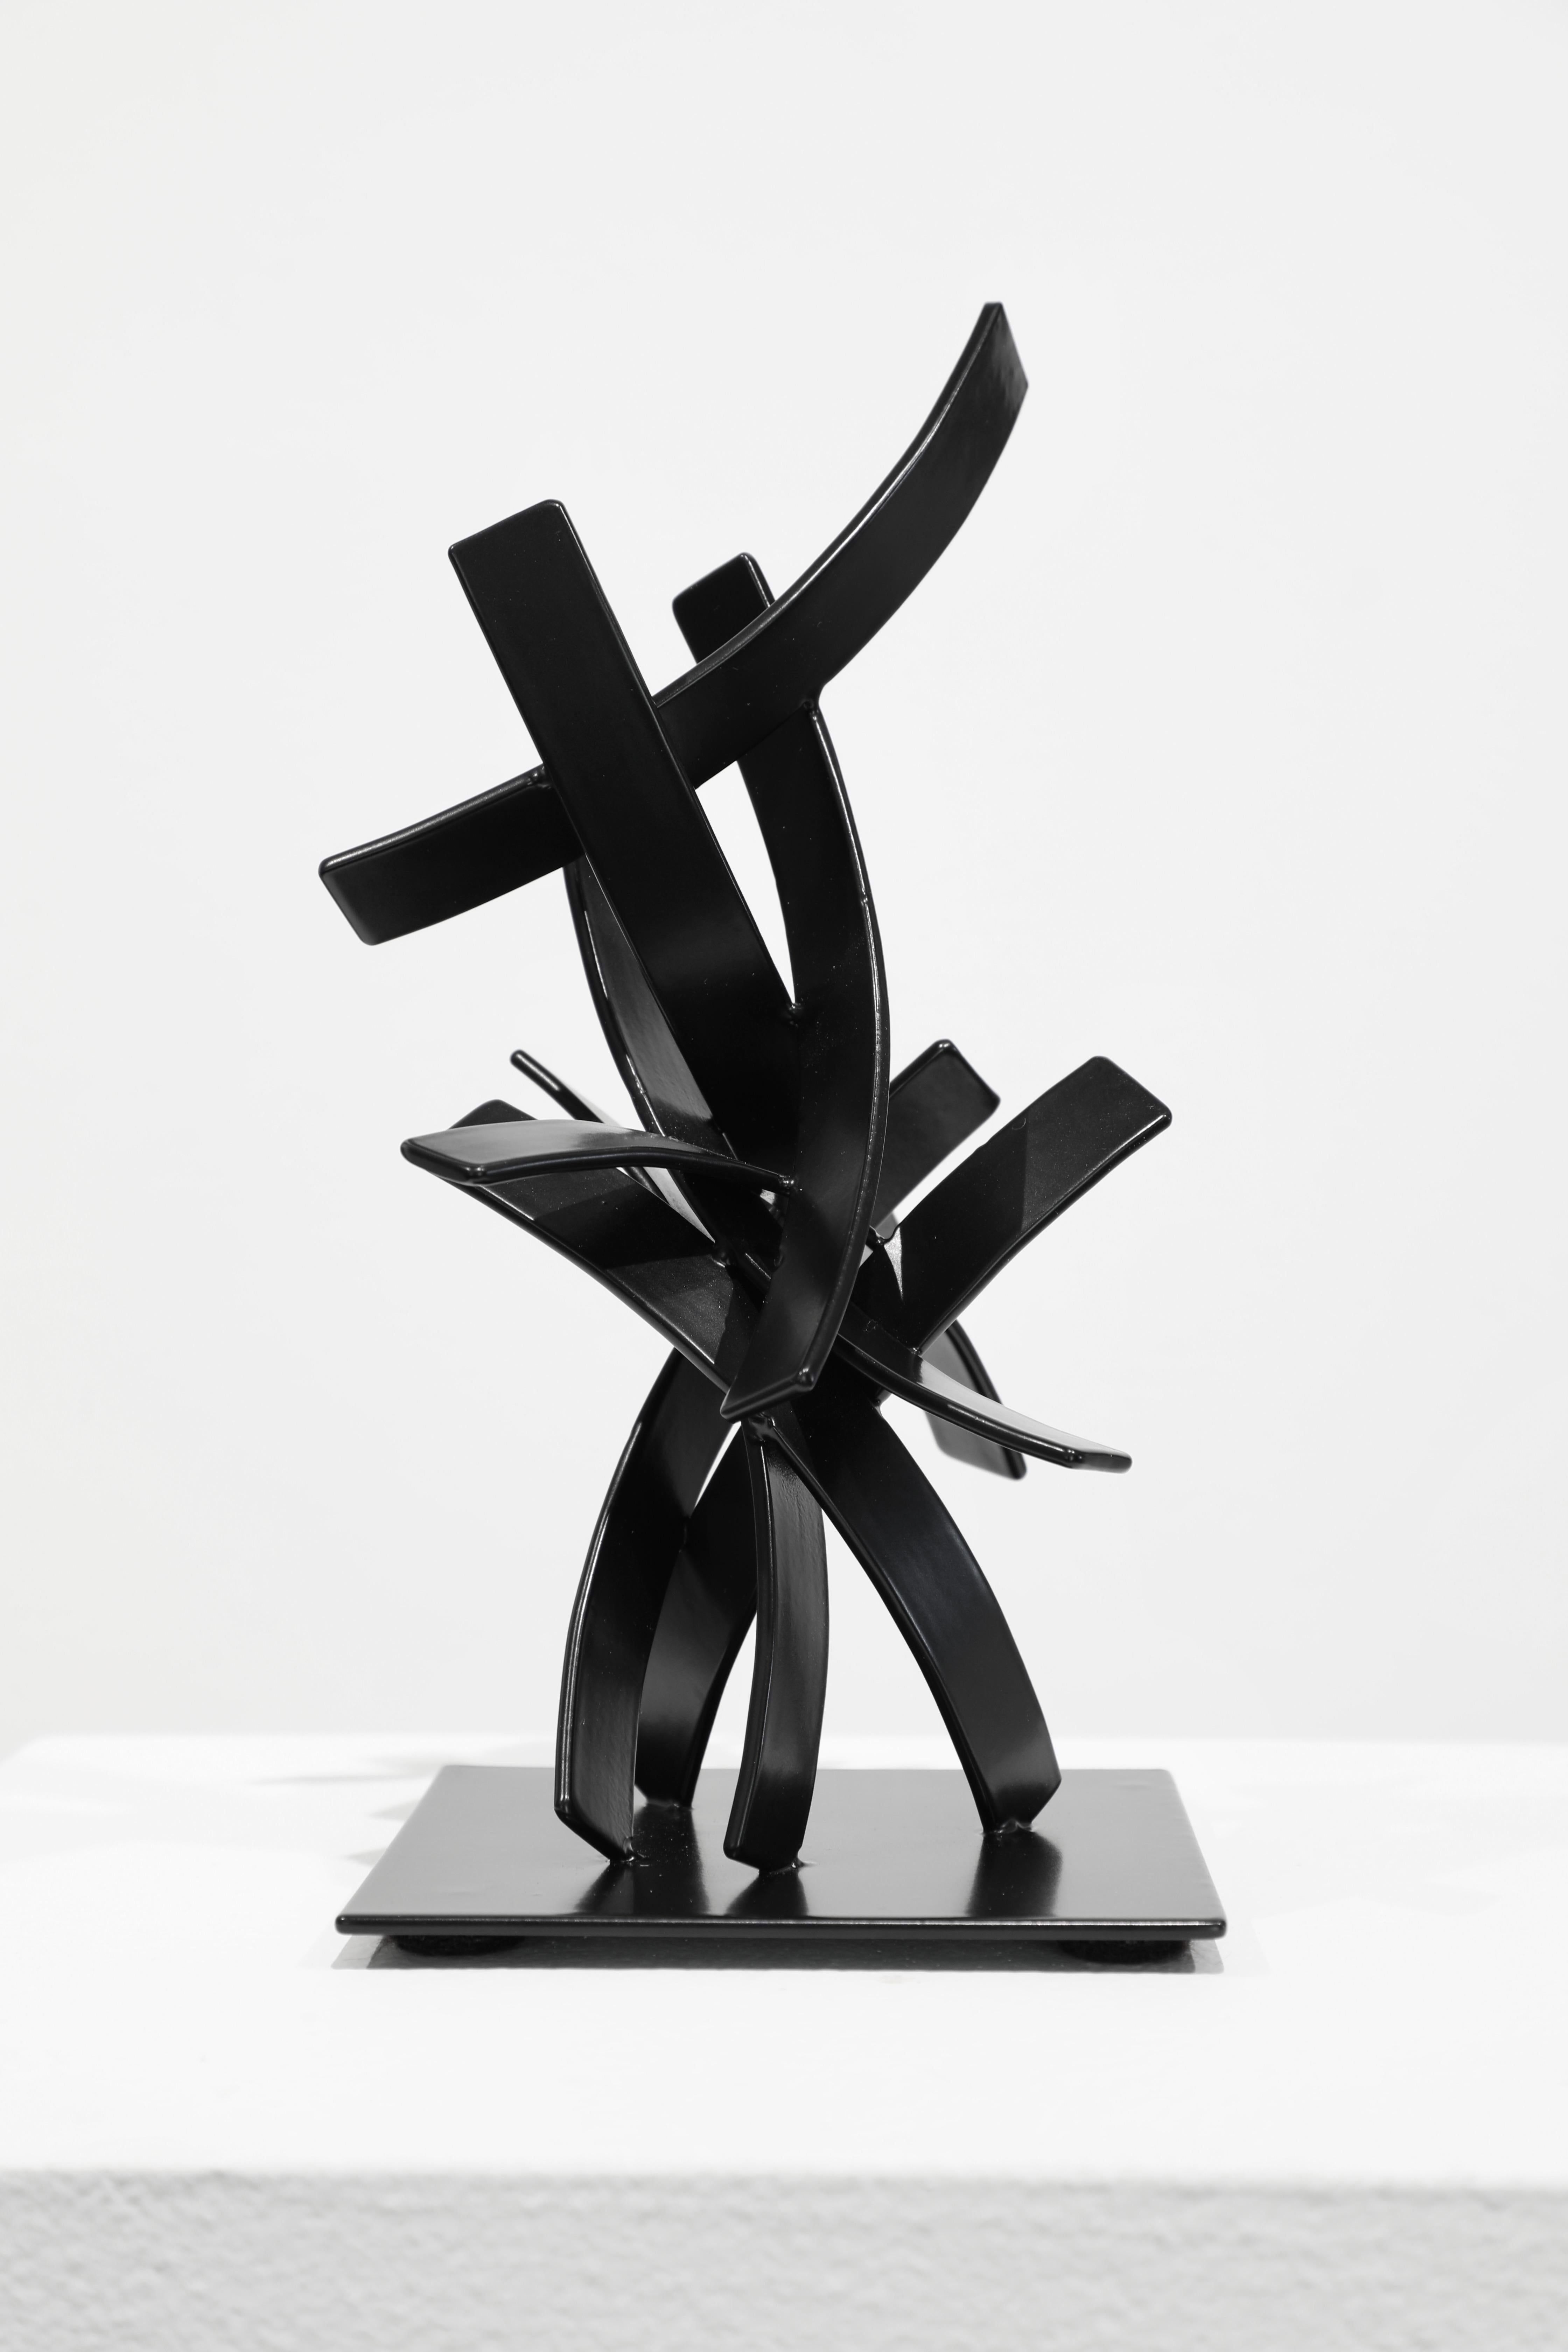 Matt Devine Abstract Sculpture - Upwell Study #2